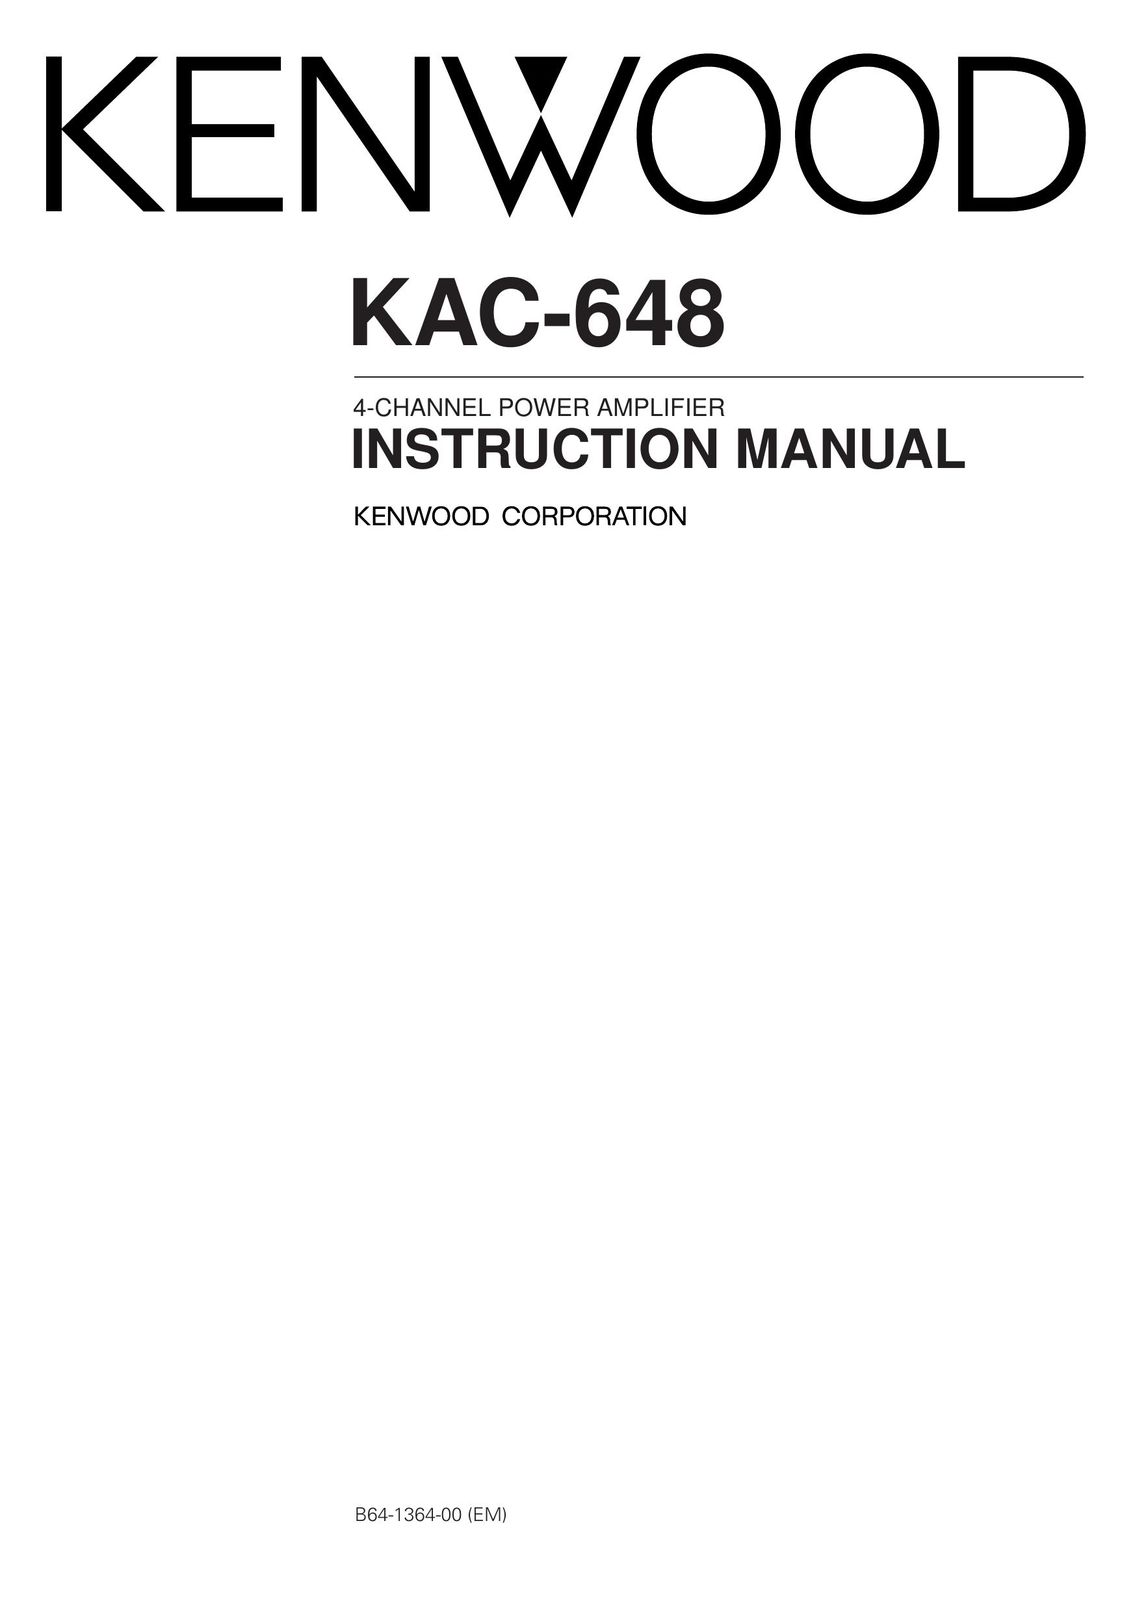 Kenwood KAC-648 Car Amplifier User Manual